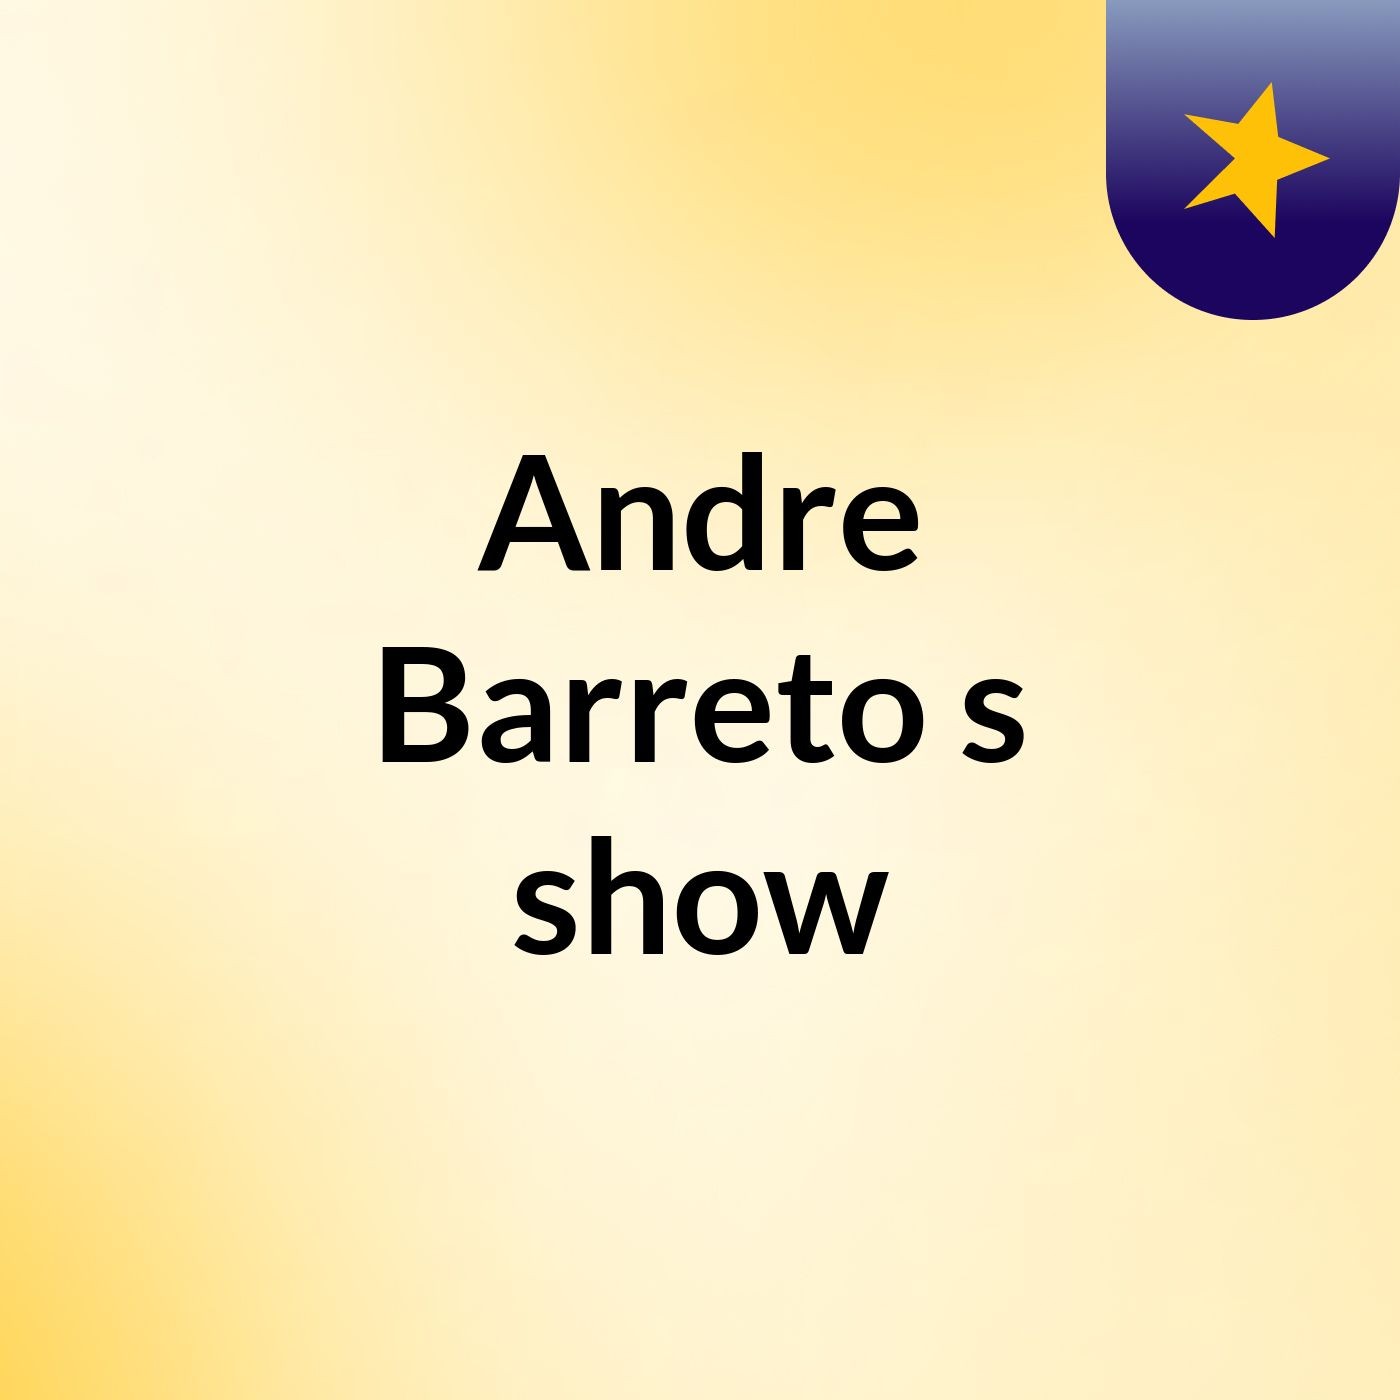 Andre Barreto's show